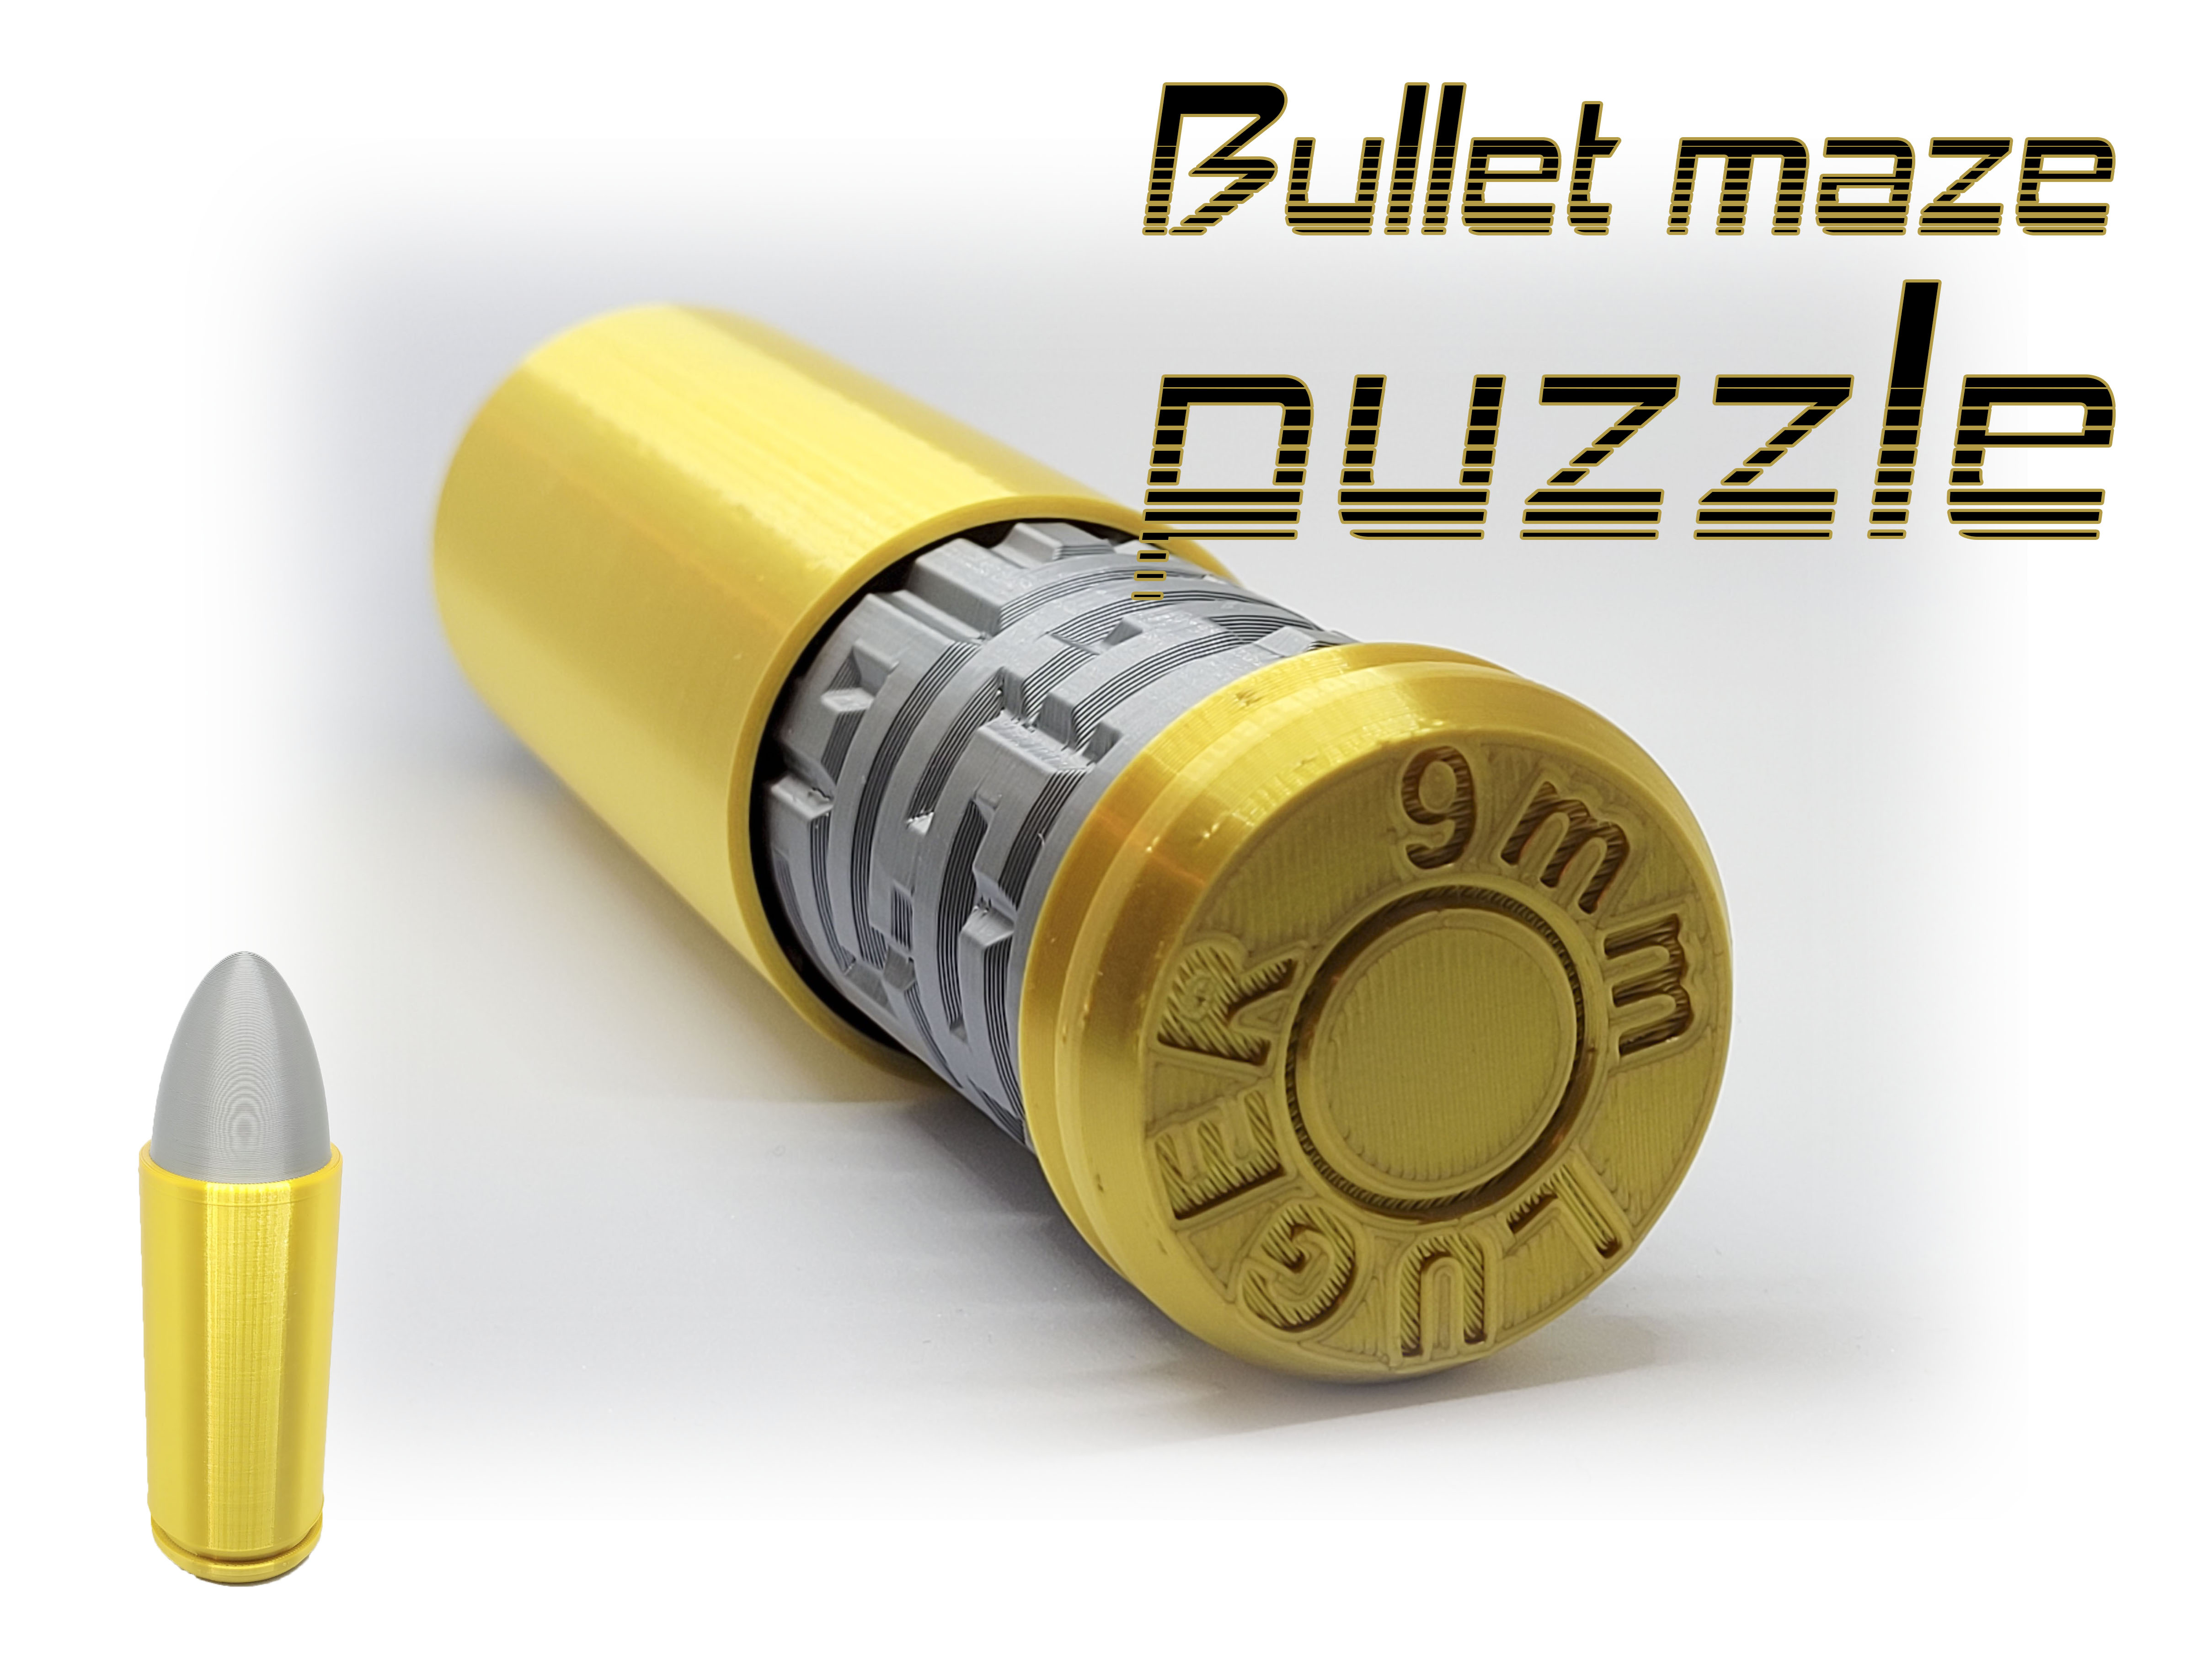 Bullet puzzle maze / hlavolam ve tvaru náboje 9mm LUGER